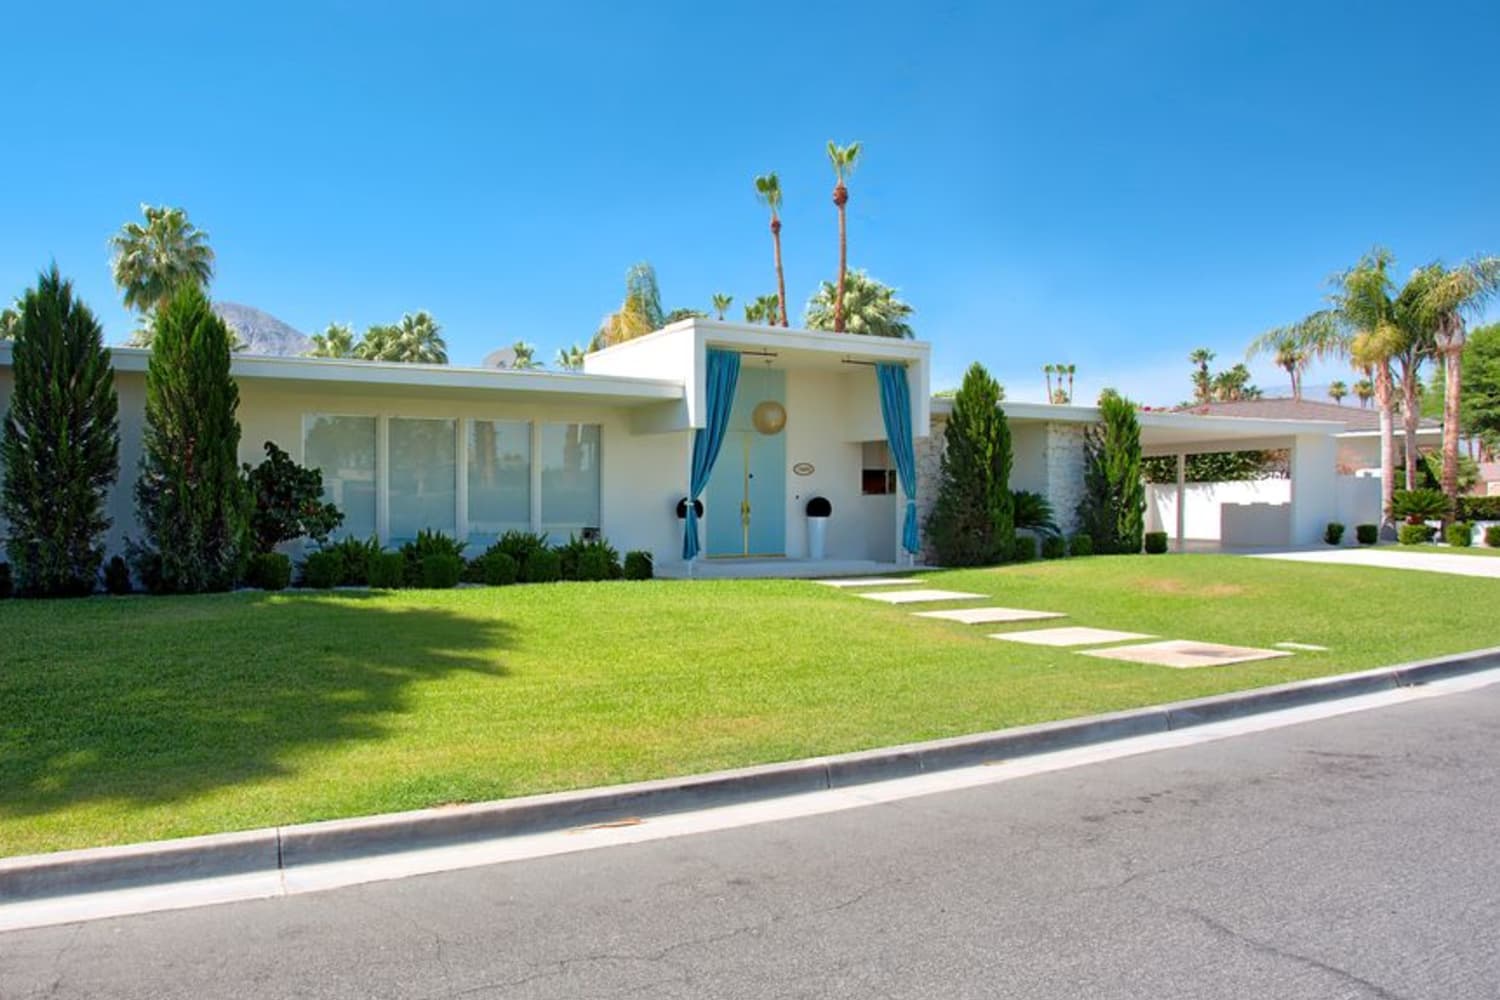 Du kan leie Lucille Ball og Desi Arnaz California Home for $ 500/natt